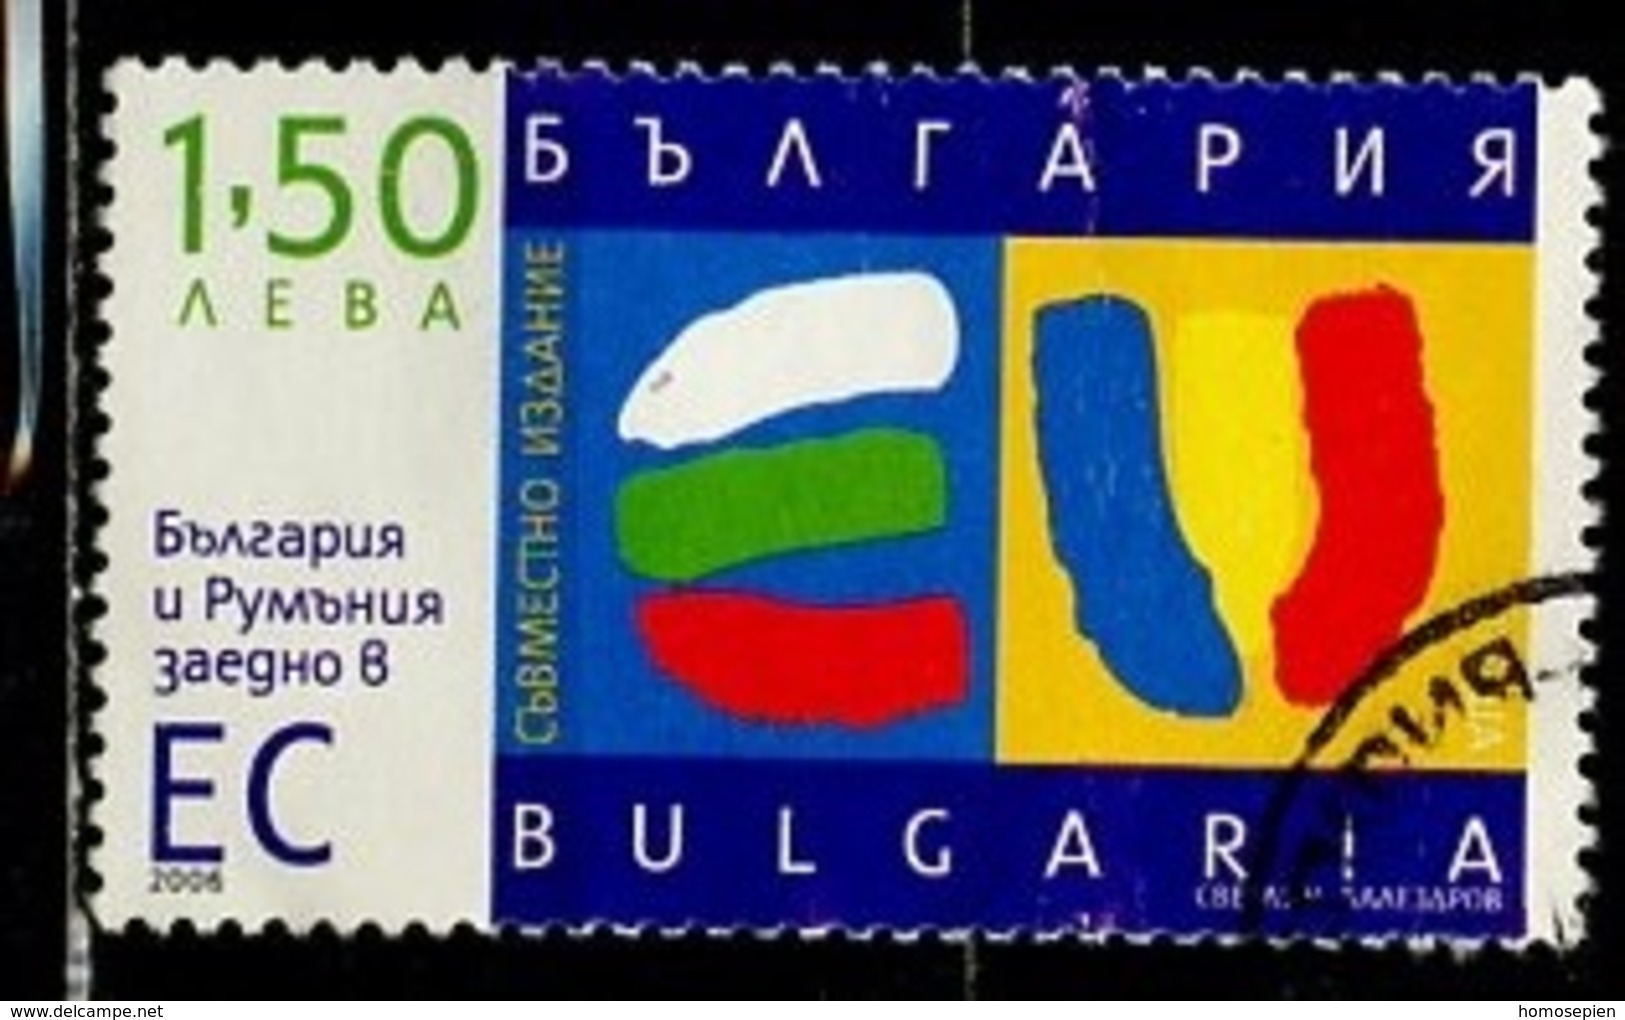 Bulgarie - Bulgarien - Bulgaria 2006 Y&T N°4120 - Michel N°4778 (o) - 1,50l Entrée De La Bulgarie Dans L'UE - Oblitérés